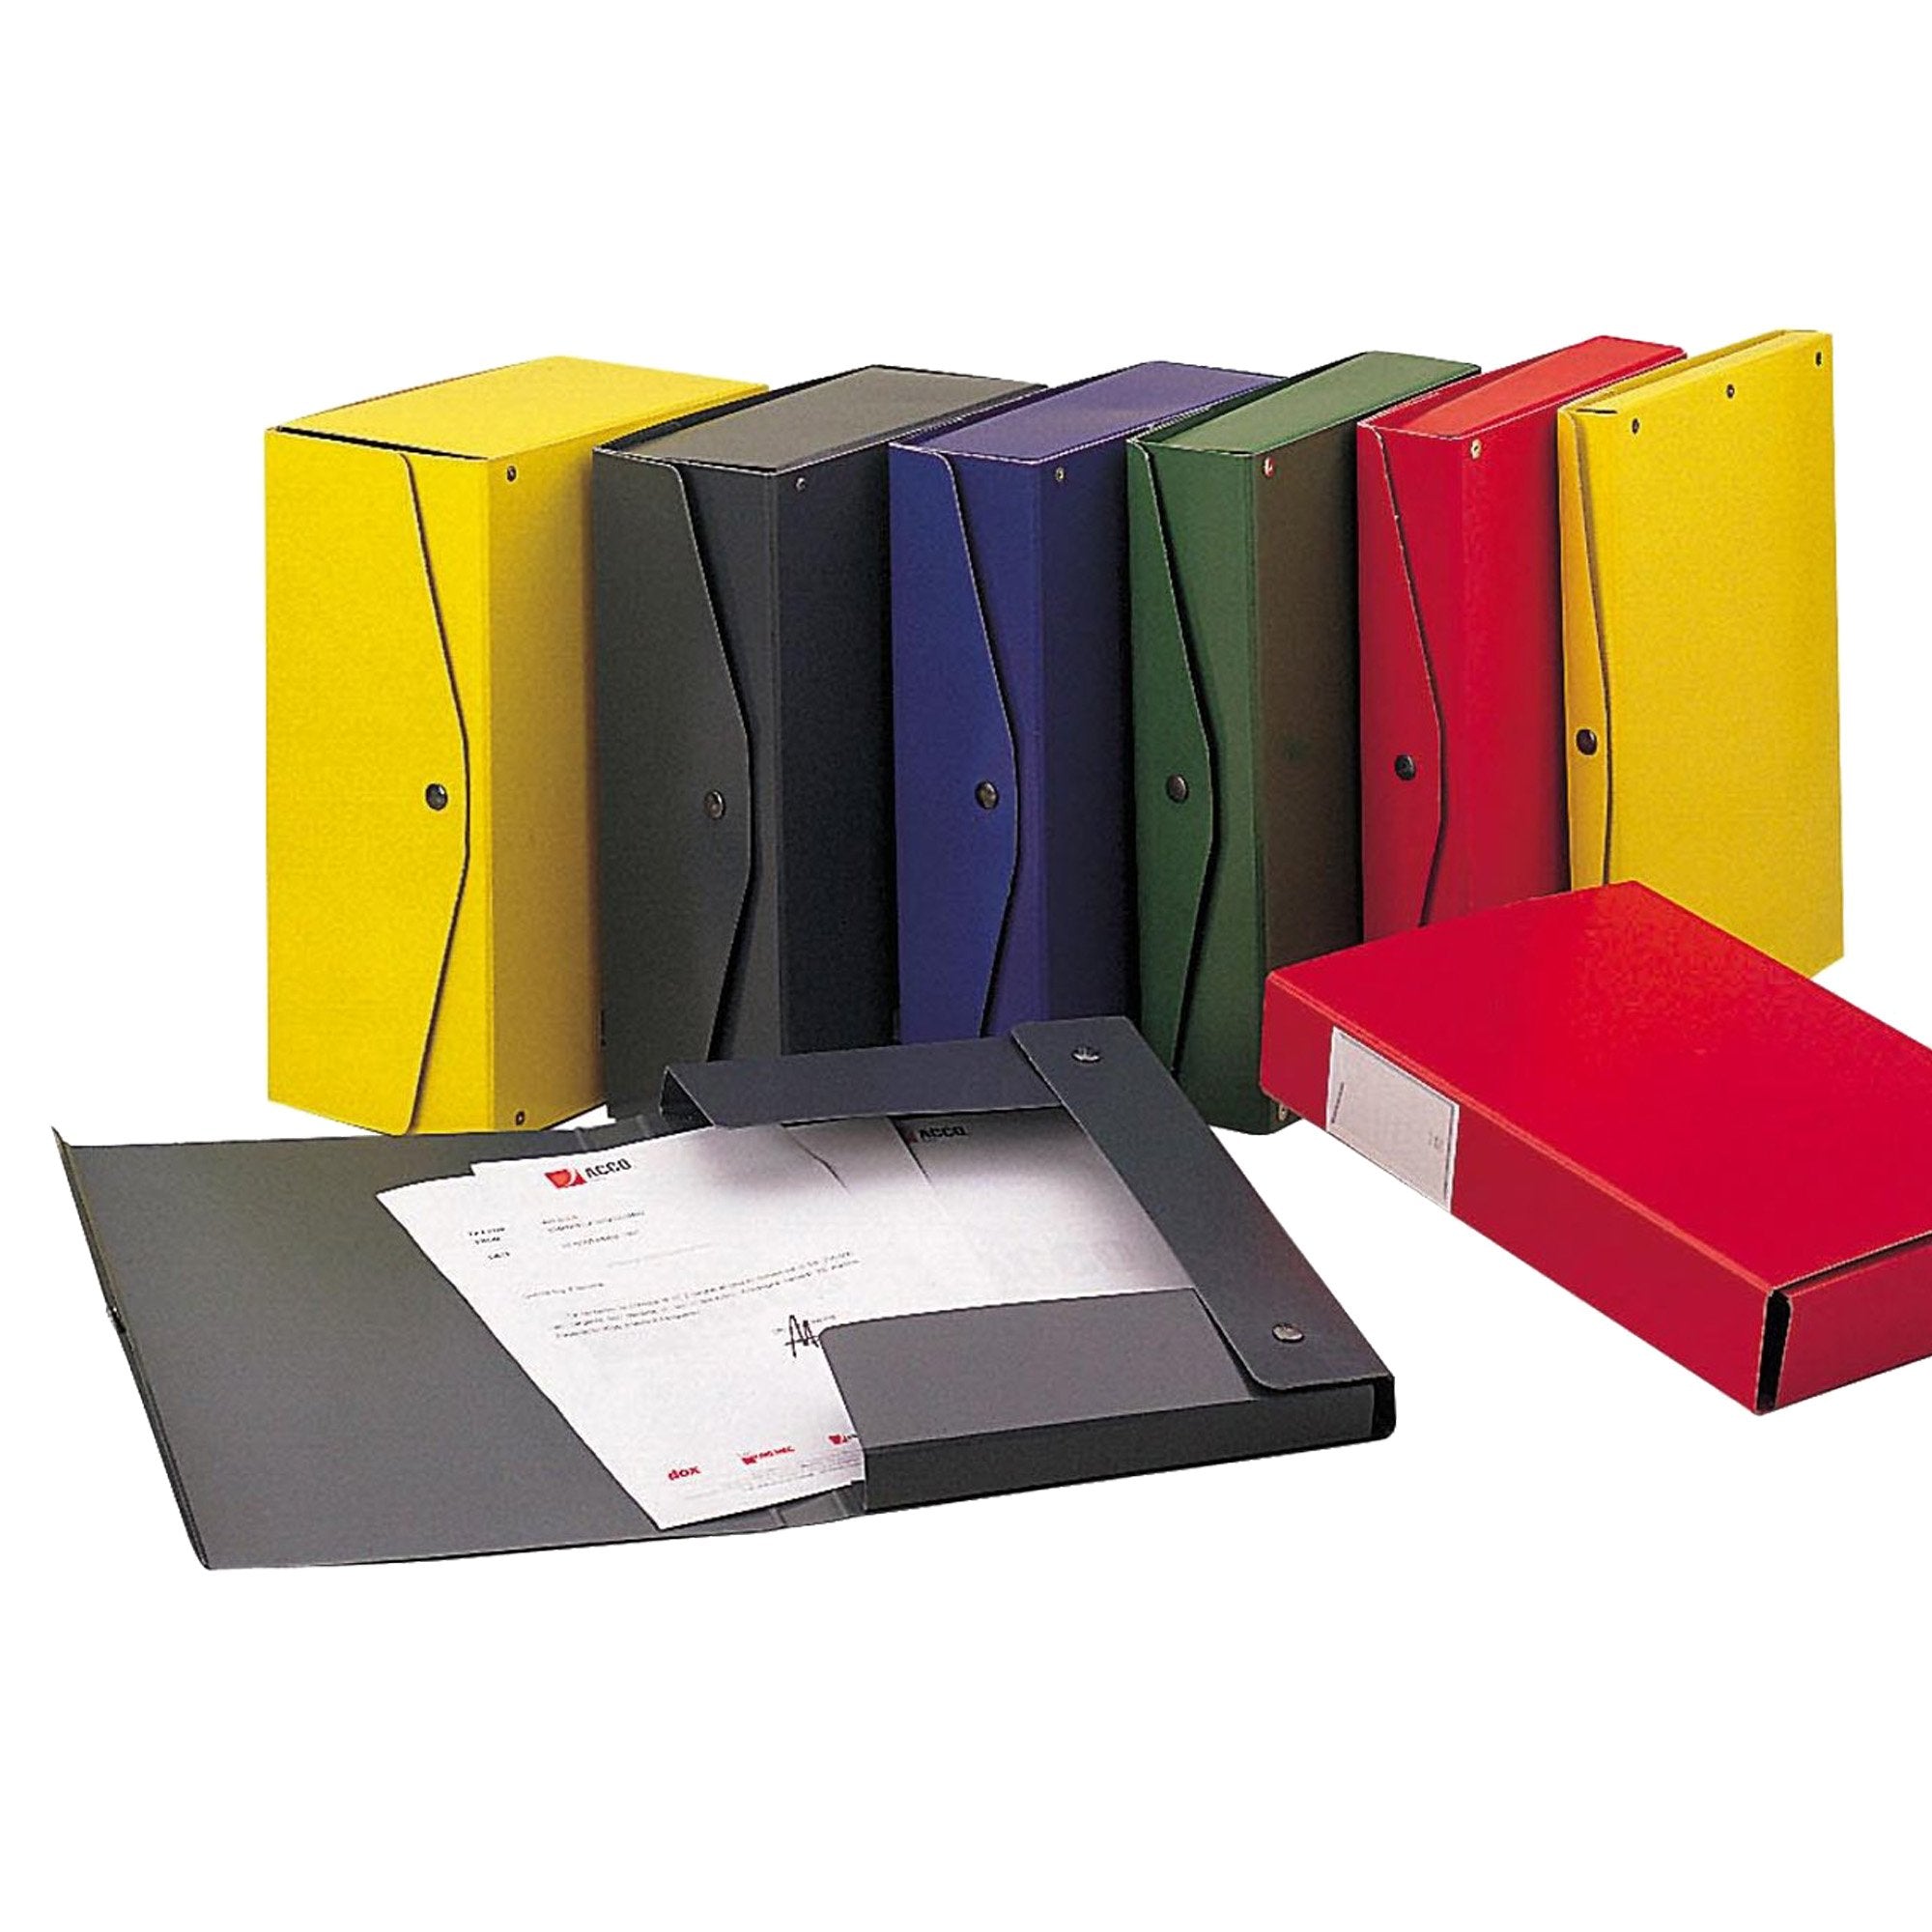 king-mec-scatola-archivio-project-15-giallo-25x35cm-dorso-15cm